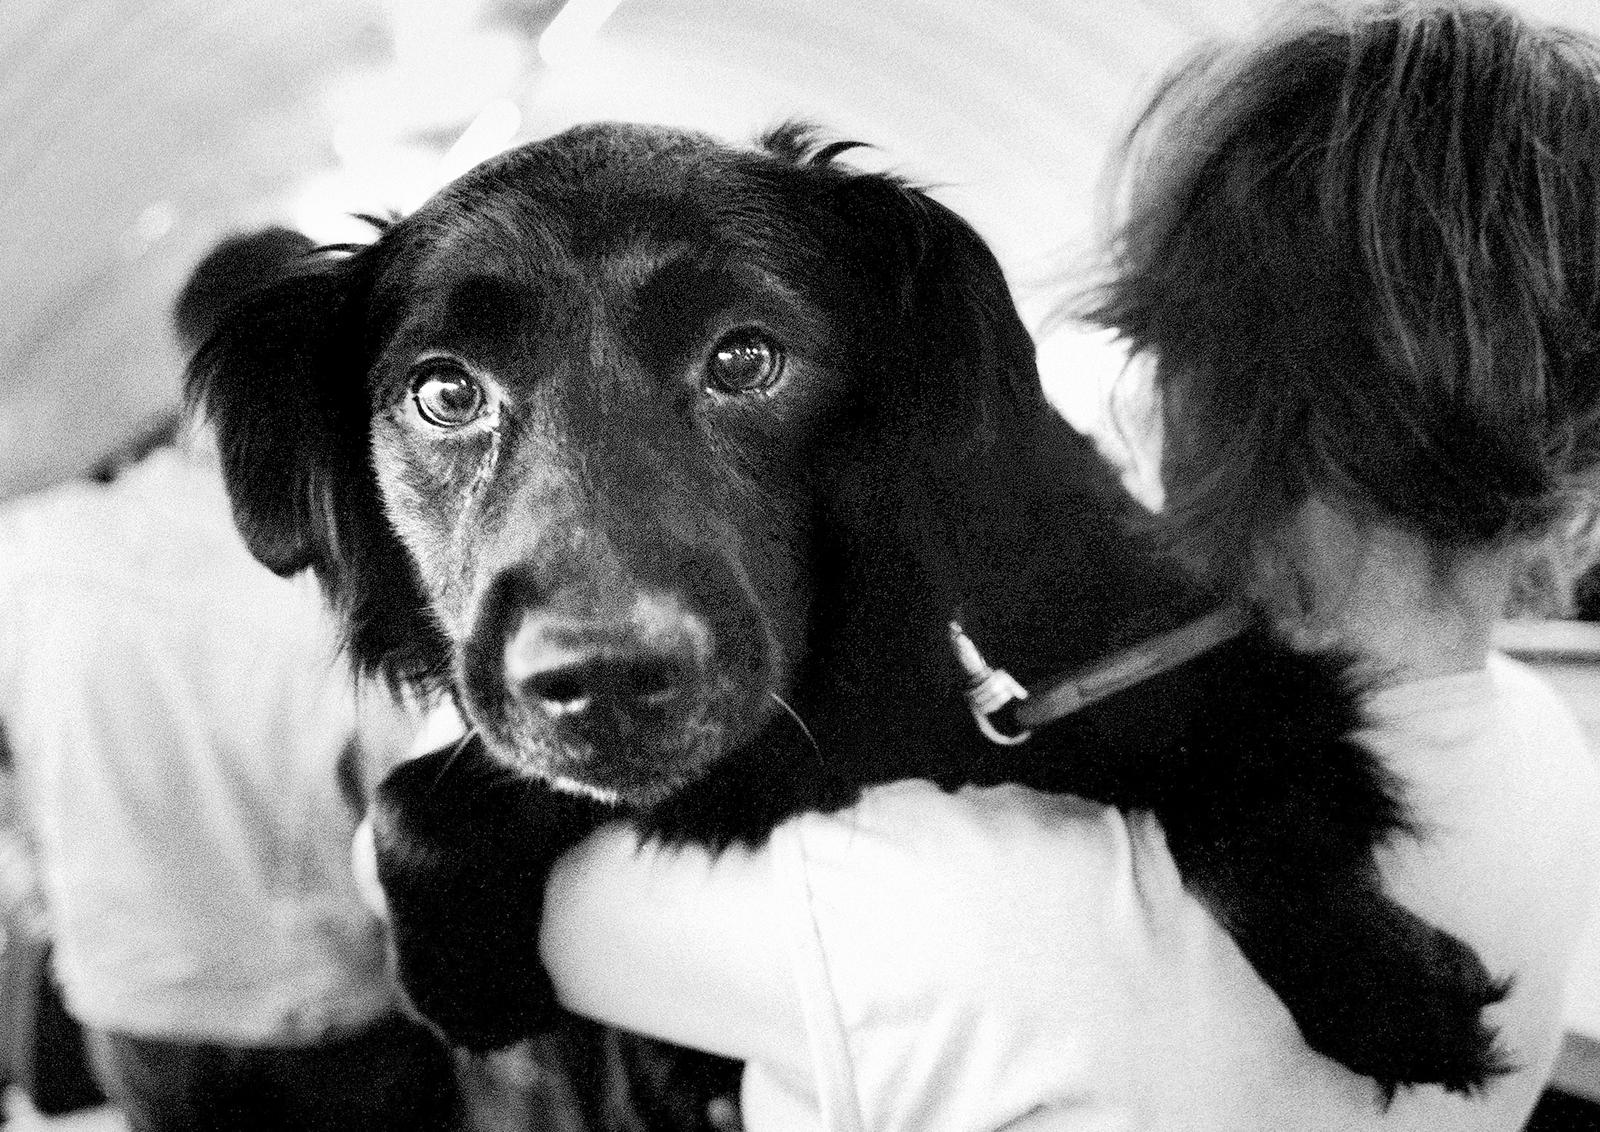 Metro Hund – signierter Stillleben- Kunstdruck in limitierter Auflage, Schwarz-Weiß-Foto, Stadt (Zeitgenössisch), Photograph, von Ian Sanderson